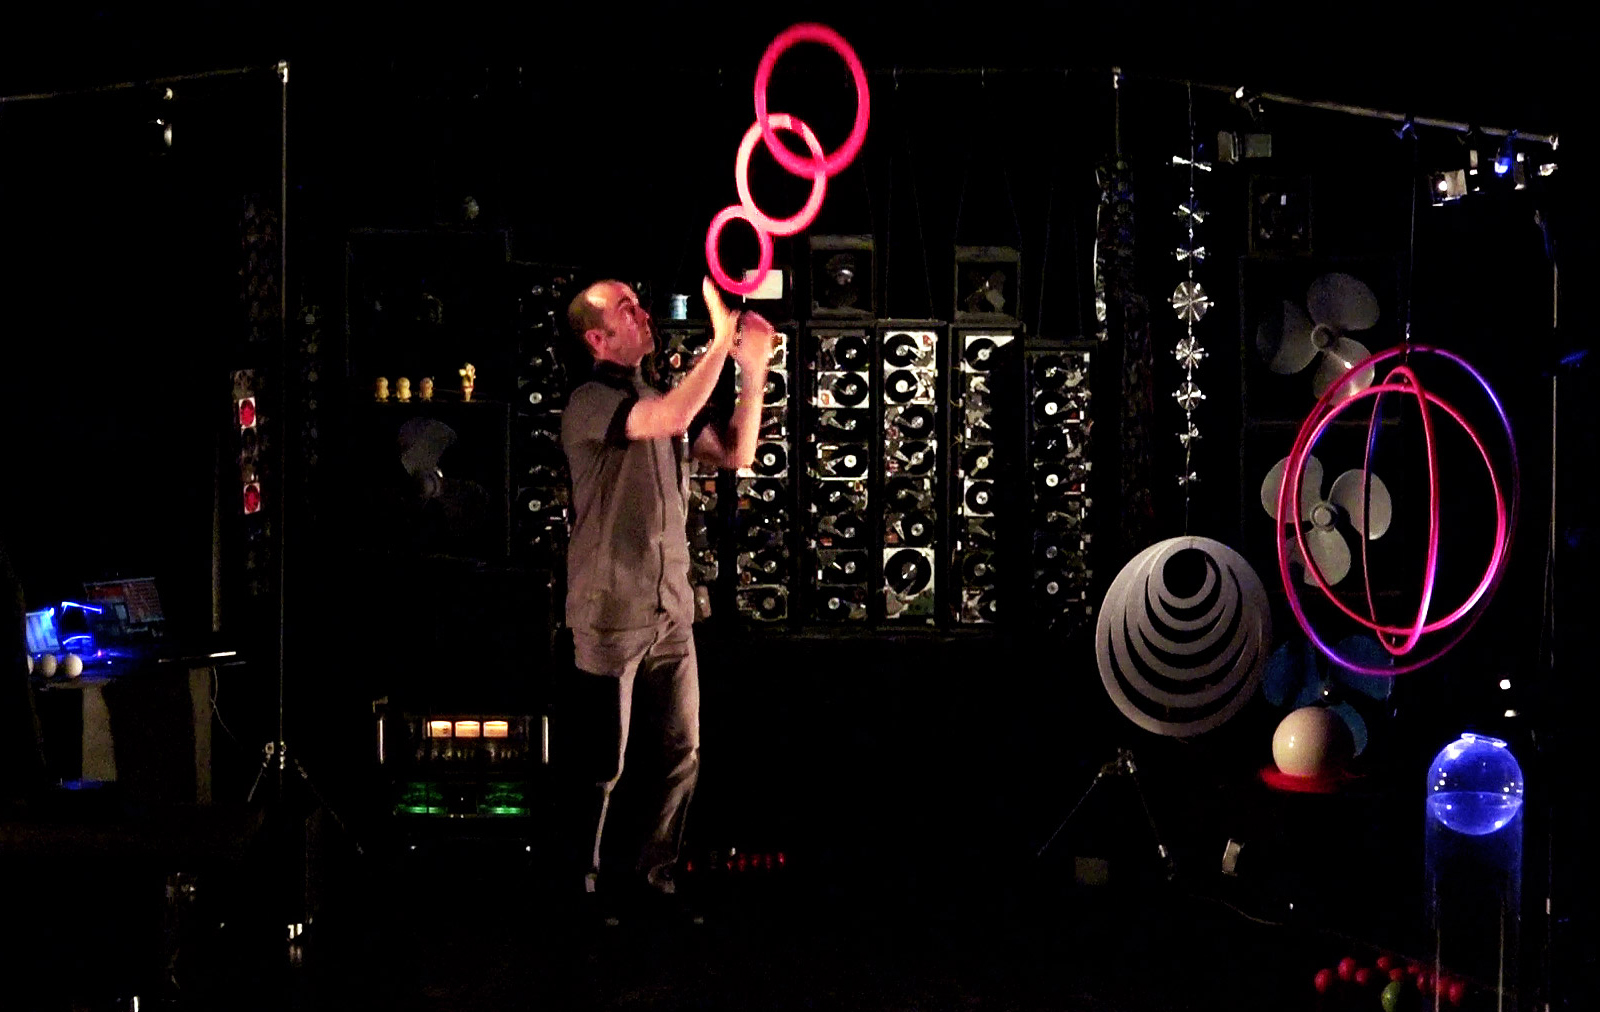 Les Objets Volants: Zone 51 - Spectacle de jonglage expérimental